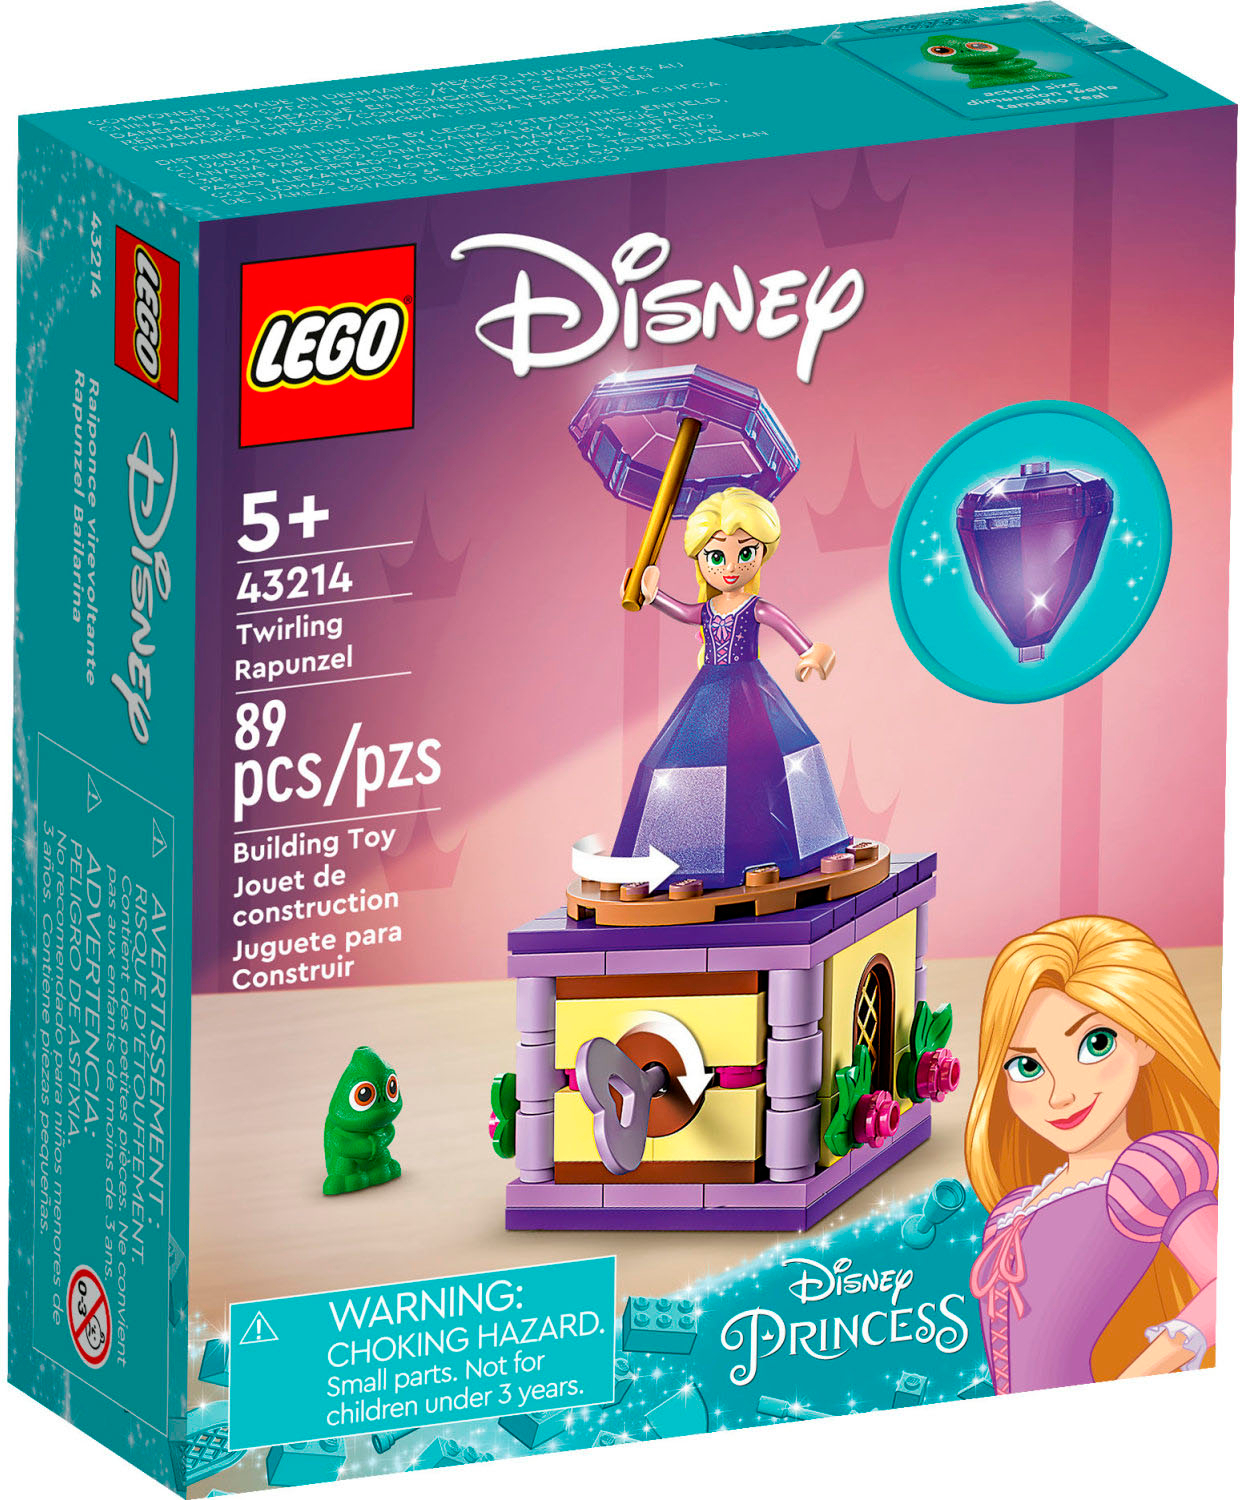 afrikansk Narabar på trods af LEGO Disney Twirling Rapunzel 43214 6427569 - Best Buy